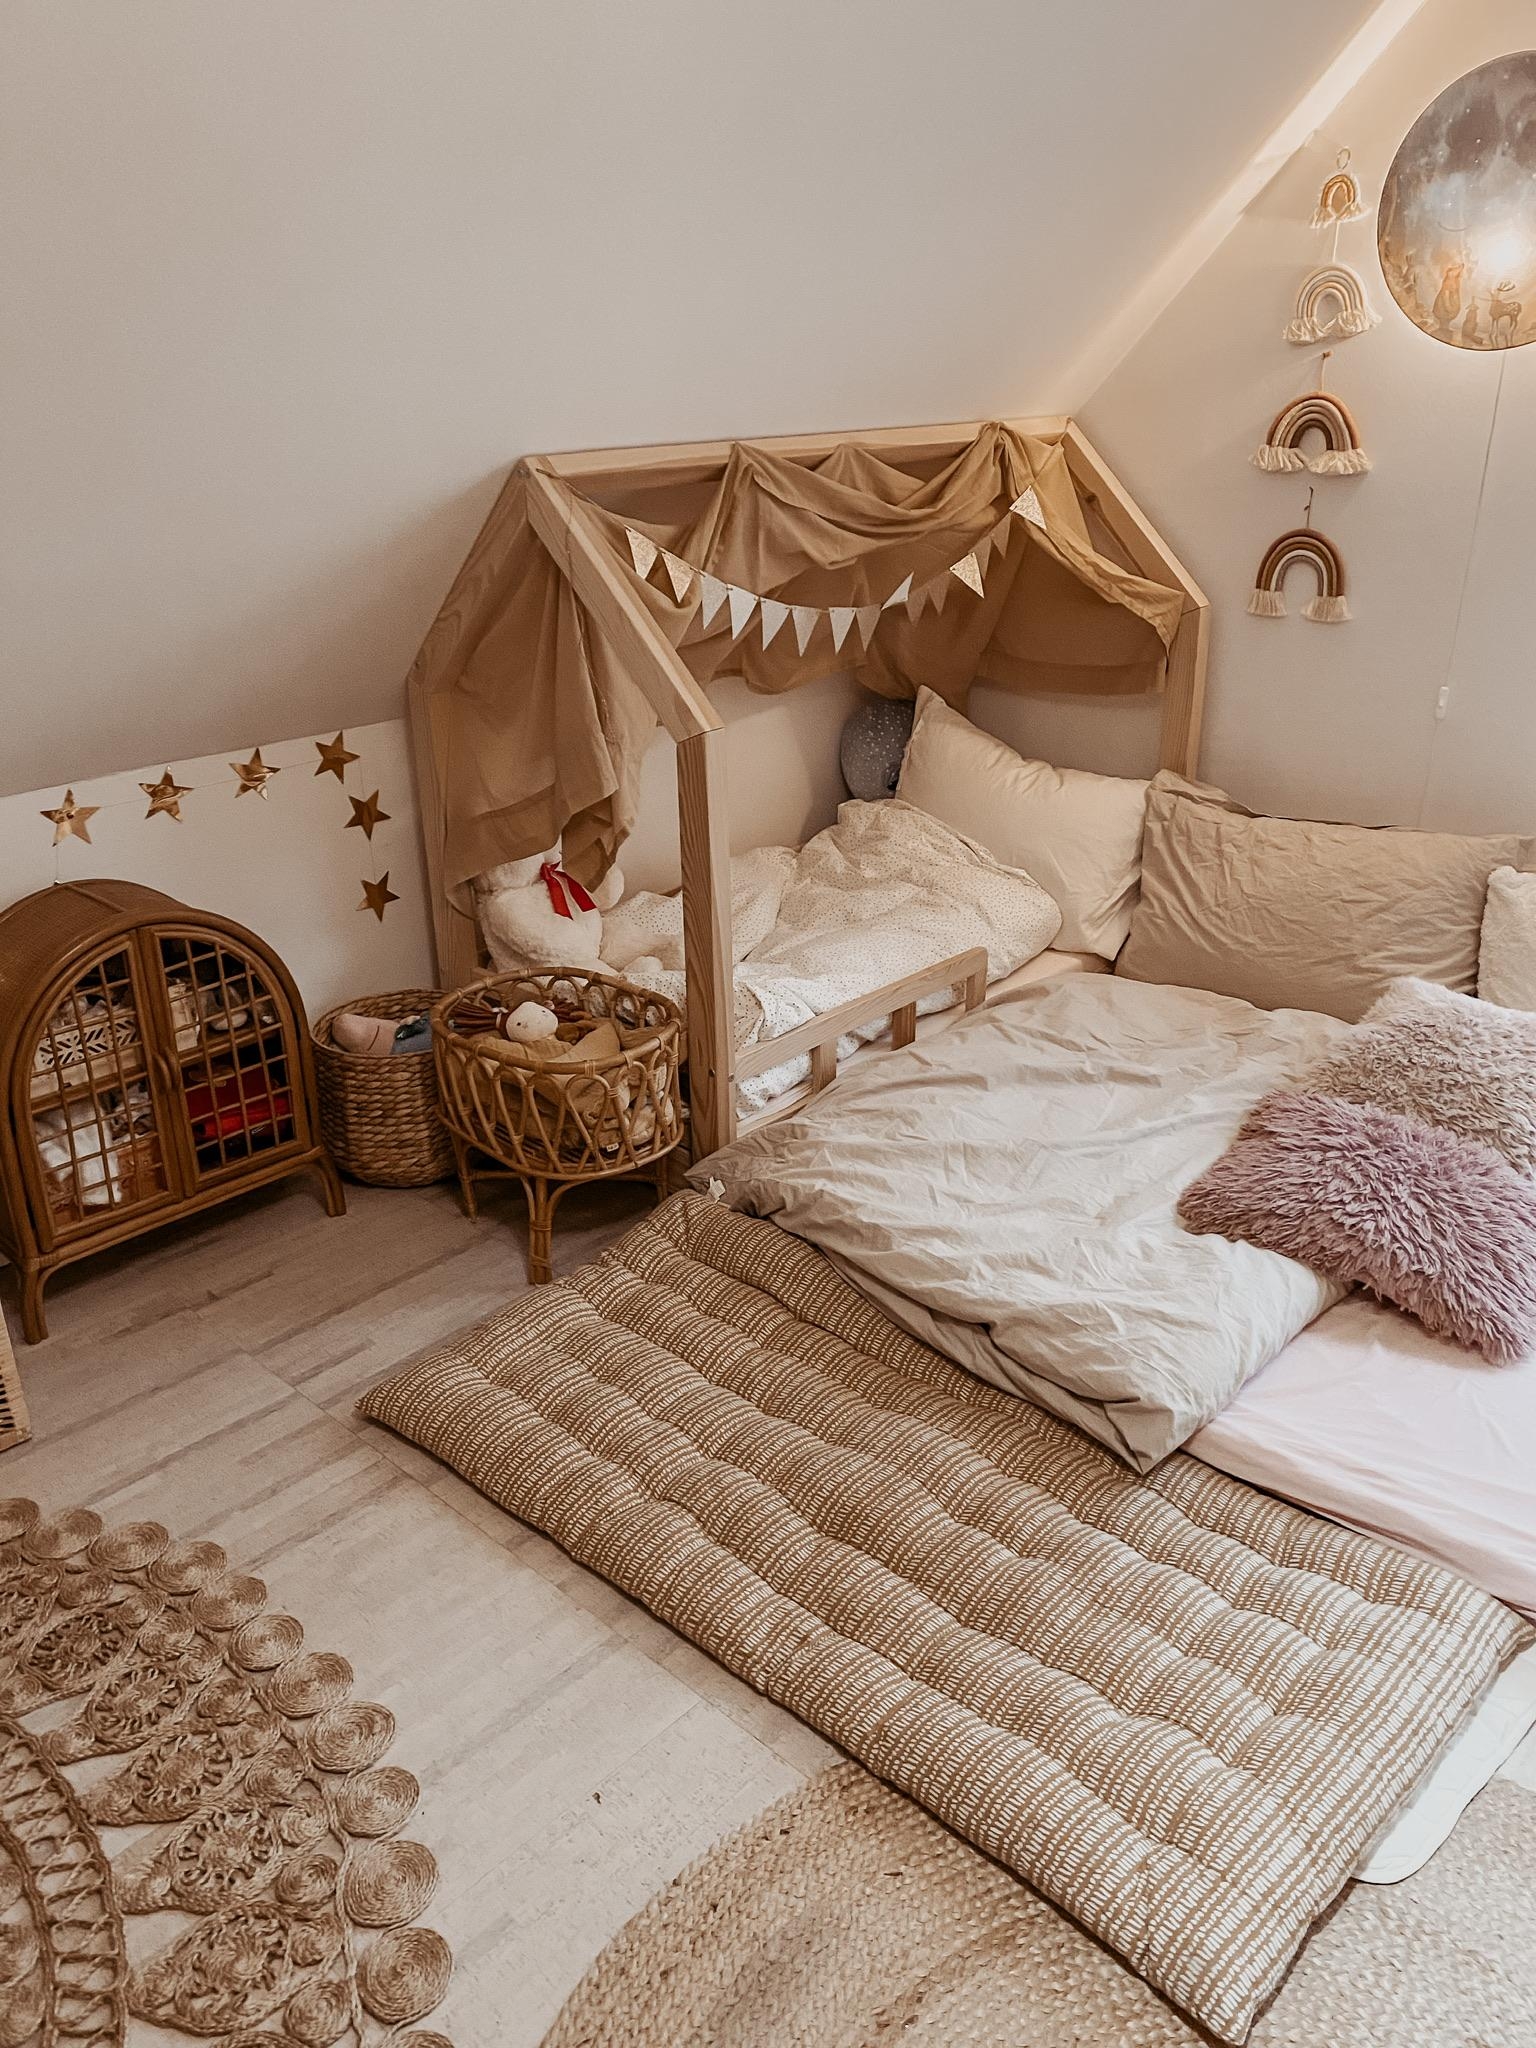 Aus Kinderbett wird 4-Mann Familienbett. 😅
#kinderzimmer #couchstyle